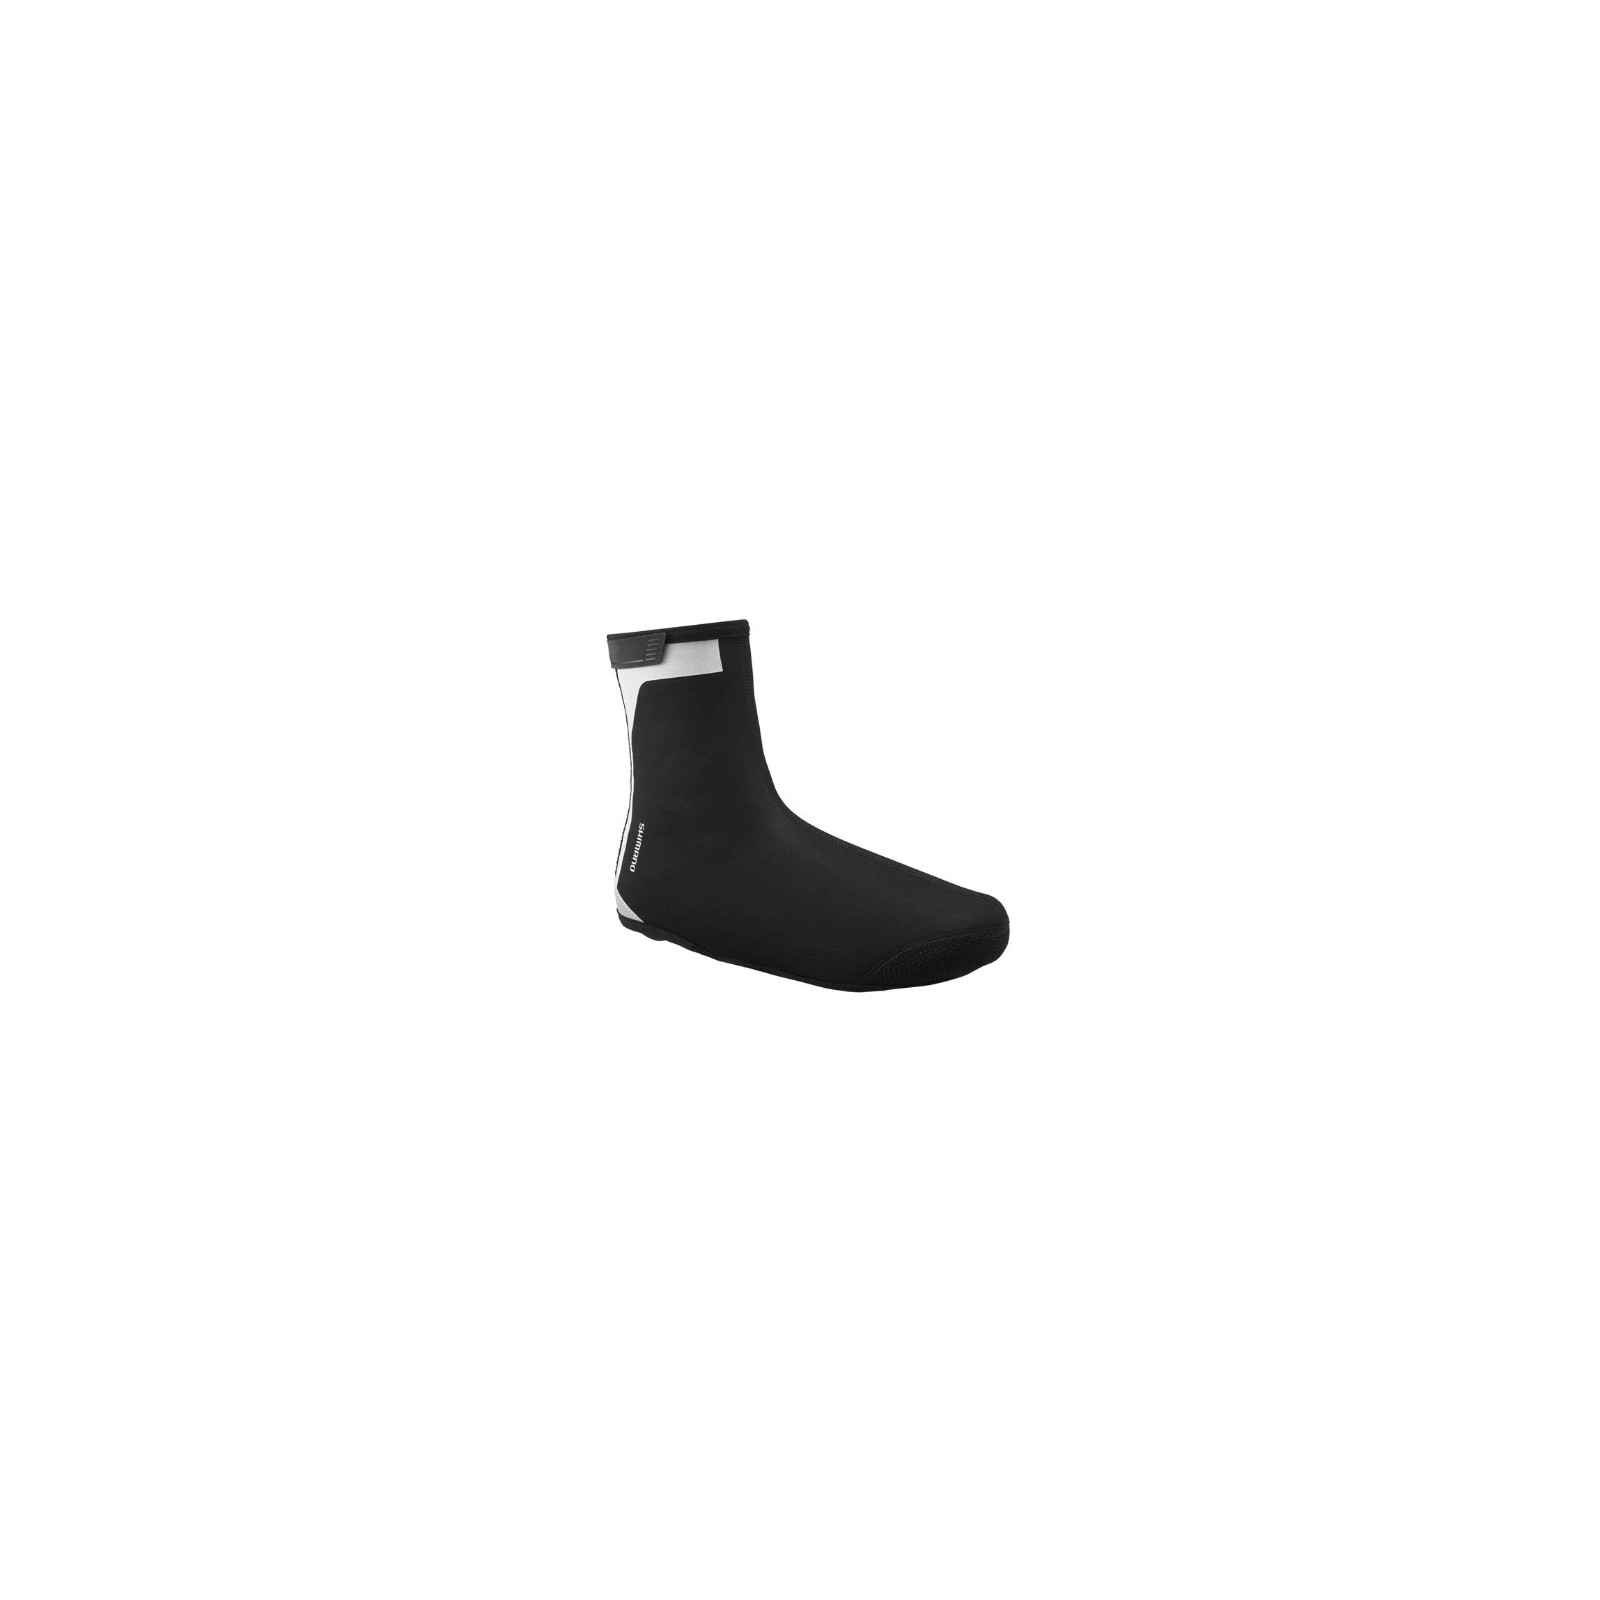 Ochraniacze na buty Shimano czarne r.L (42-43) - CWFABWRS51UL4